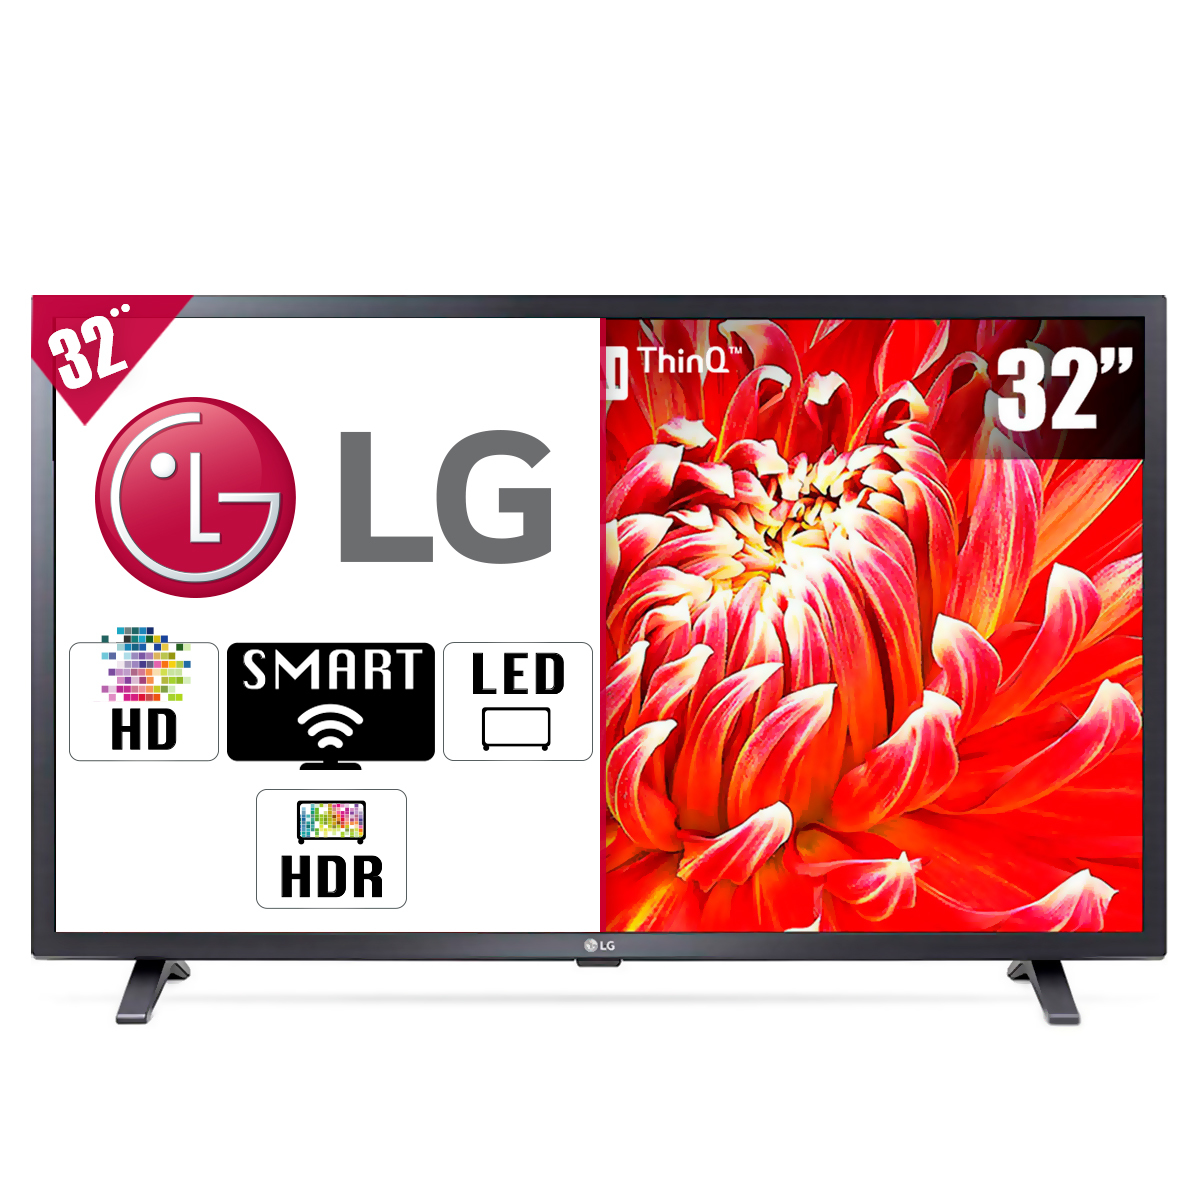 Pantalla TV LG 32LM630BPUB / Inteligencia Artificial ThinQ / HD / 32 Pulg. / Smart TV / Led / Bluetooth / HDMI / USB / 